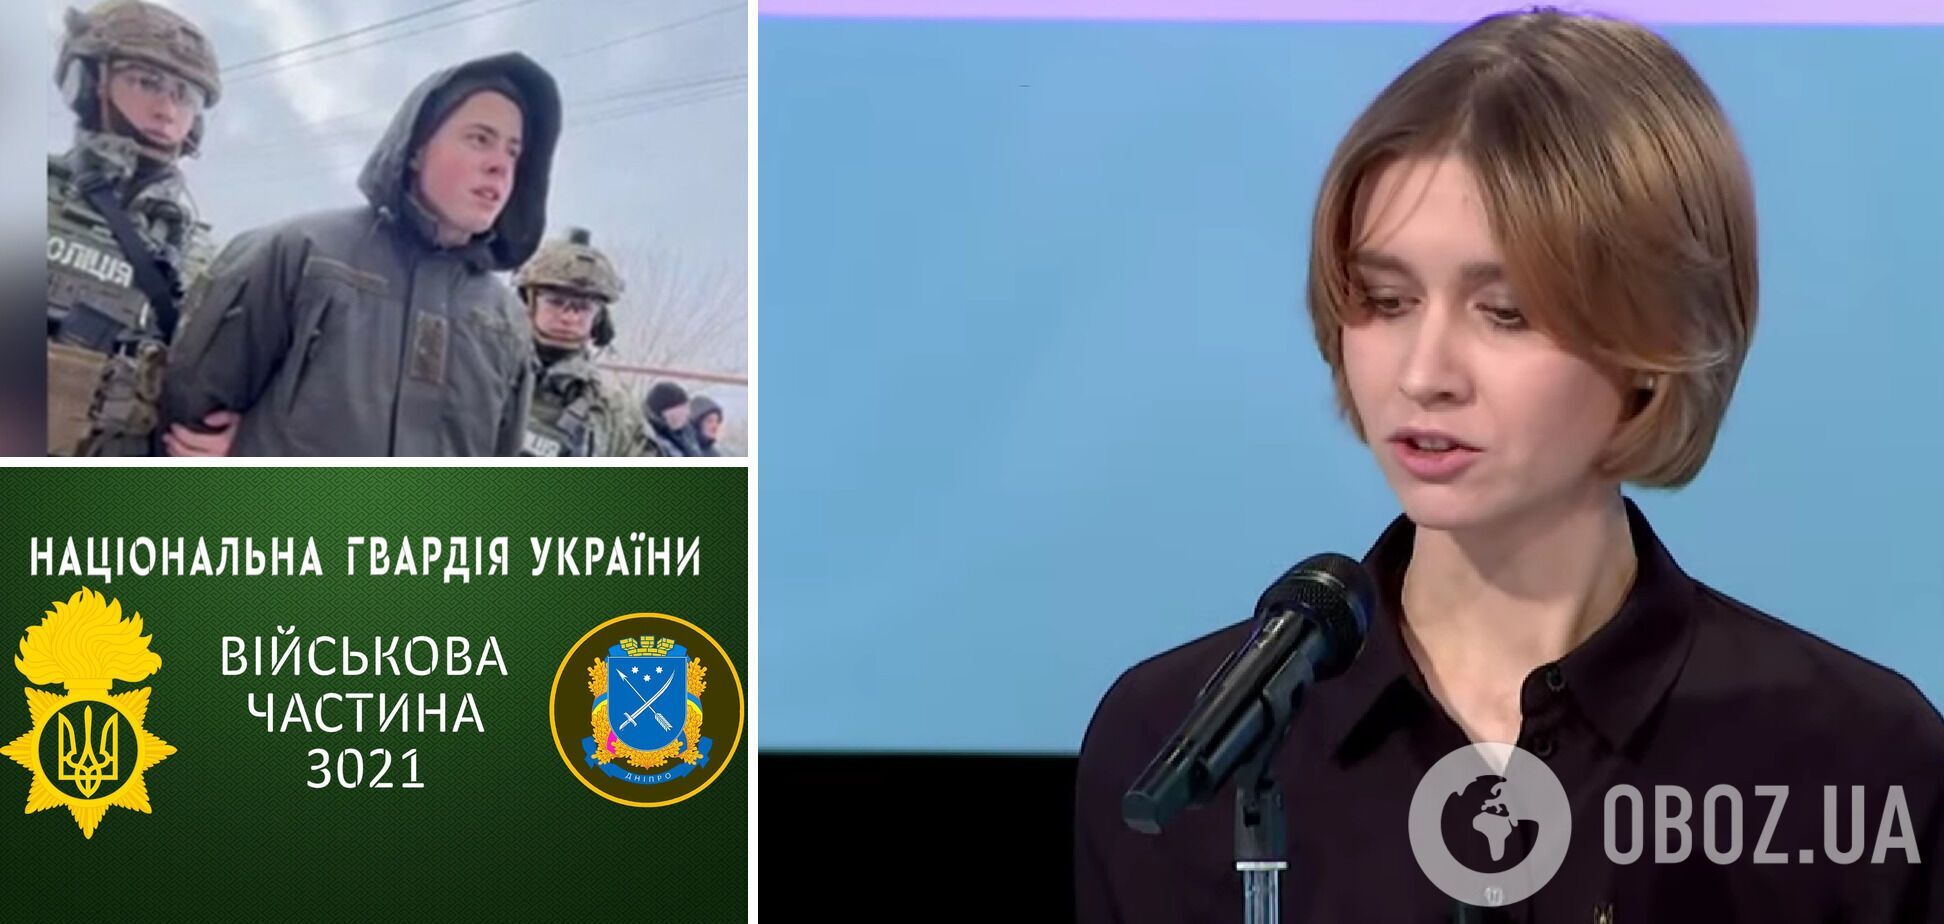 Елена Липовенко рассказала о ситуации в воинской части 3021 НГУ